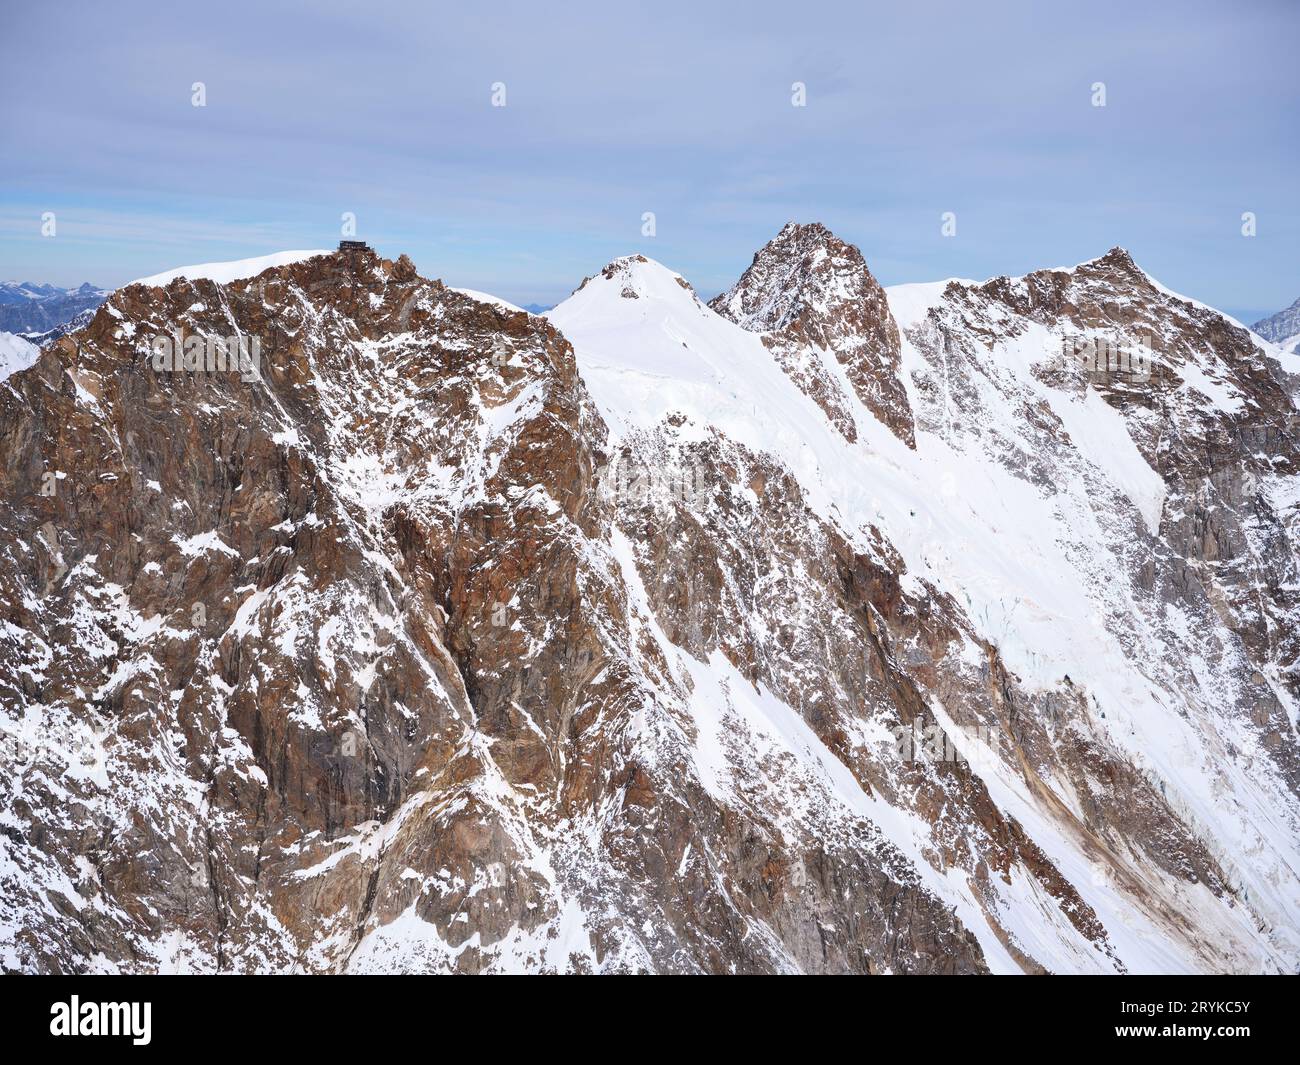 VUE AÉRIENNE. Monte Rosa massif de gauche à droite ; Punta Gnifetti, Punta Zumstein, Dufourspitze (plus haut avec 4634 mètres), Nordend. Piémont, Italie. Banque D'Images